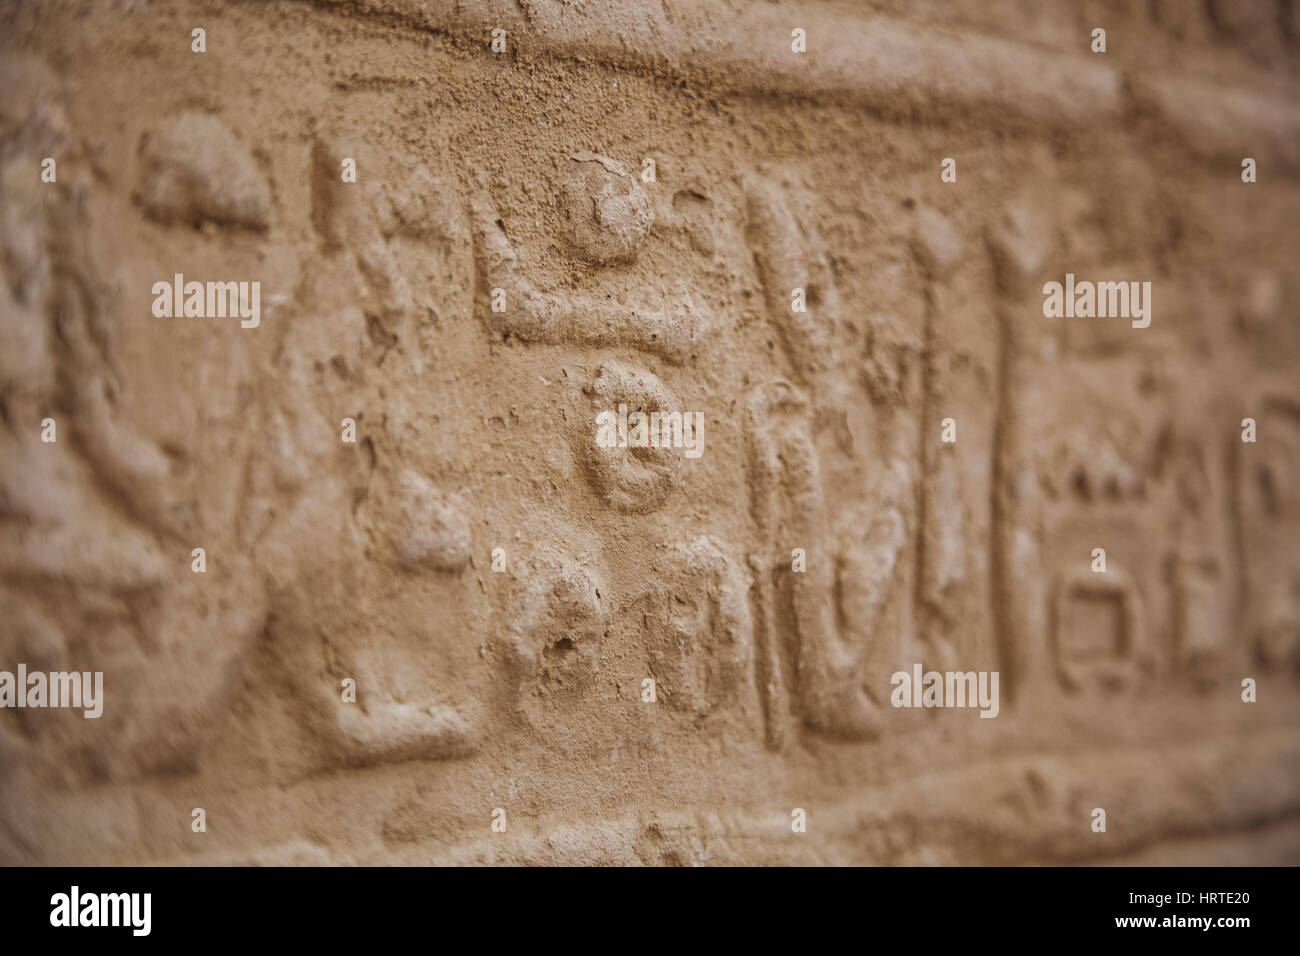 Nahaufnahme von Hieroglyphen geschnitten in Mauern des antiken Karnak-Tempel in Luxor, Ägypten. Foto geschossen im Jahr 2017. Horizontale Farbfotografie. Stockfoto